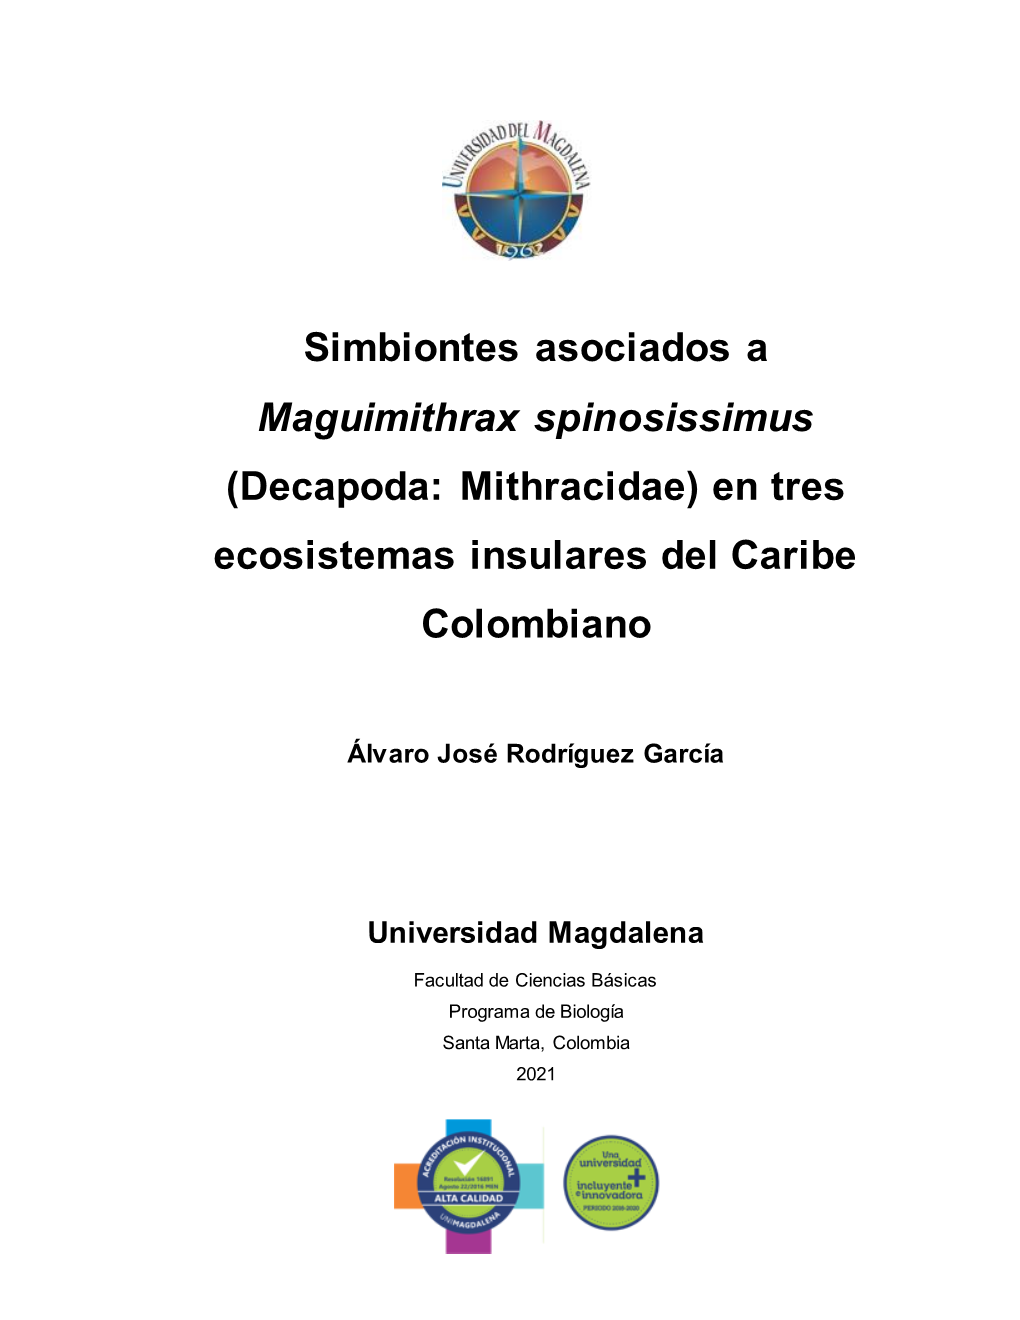 Simbiontes Asociados a Maguimithrax Spinosissimus (Decapoda: Mithracidae) En Tres Ecosistemas Insulares Del Caribe